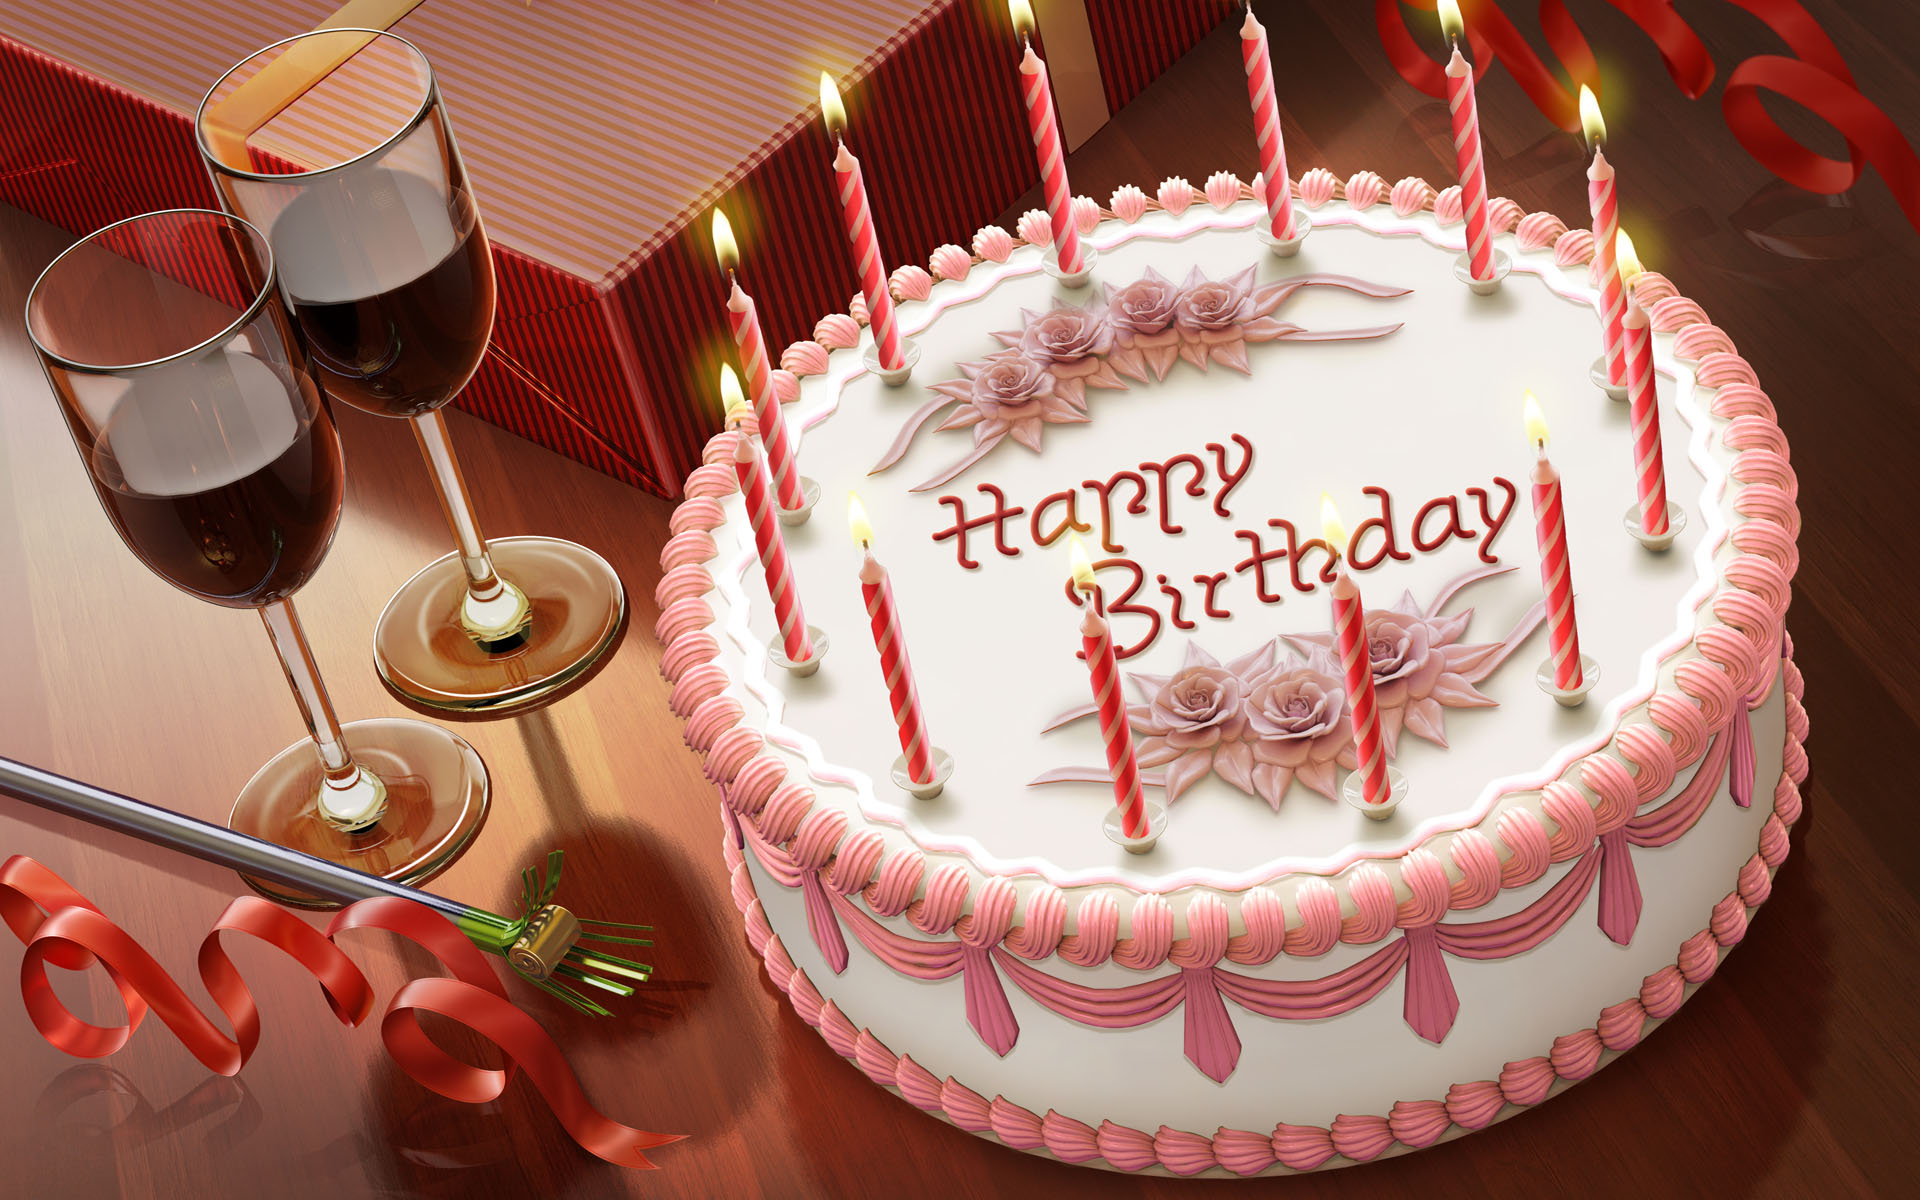 Happy-Birthday-tamar20-30799064-1920-1200.jpg